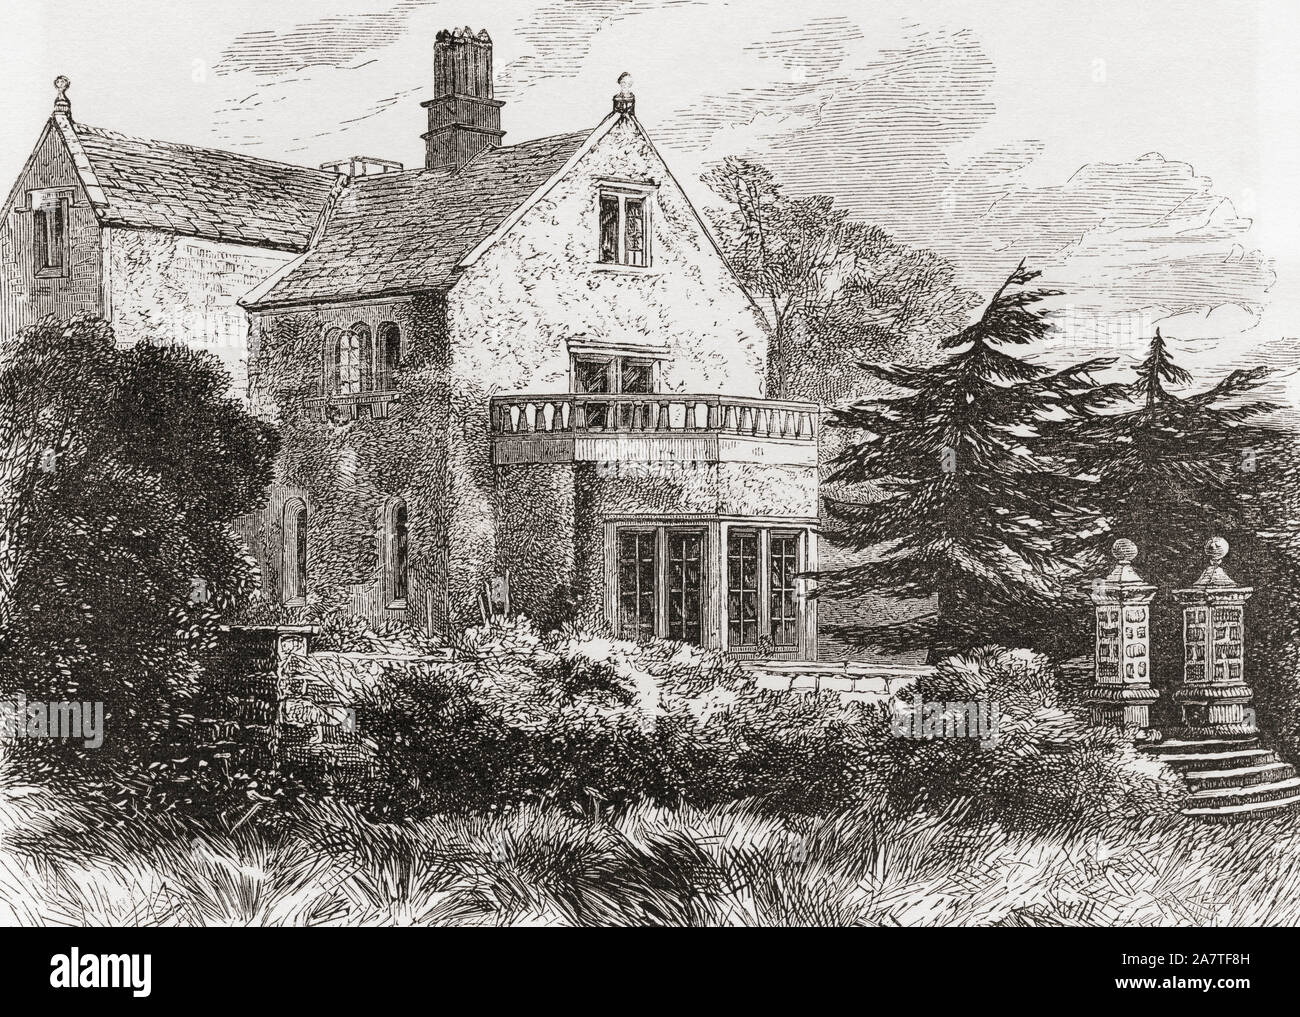 Die Heimat von Florence Nightingale, Lea Hurst, Derbyshire, England, hier im 19. Jahrhundert. Aus dem Englischen Bilder, veröffentlicht 1890. Stockfoto